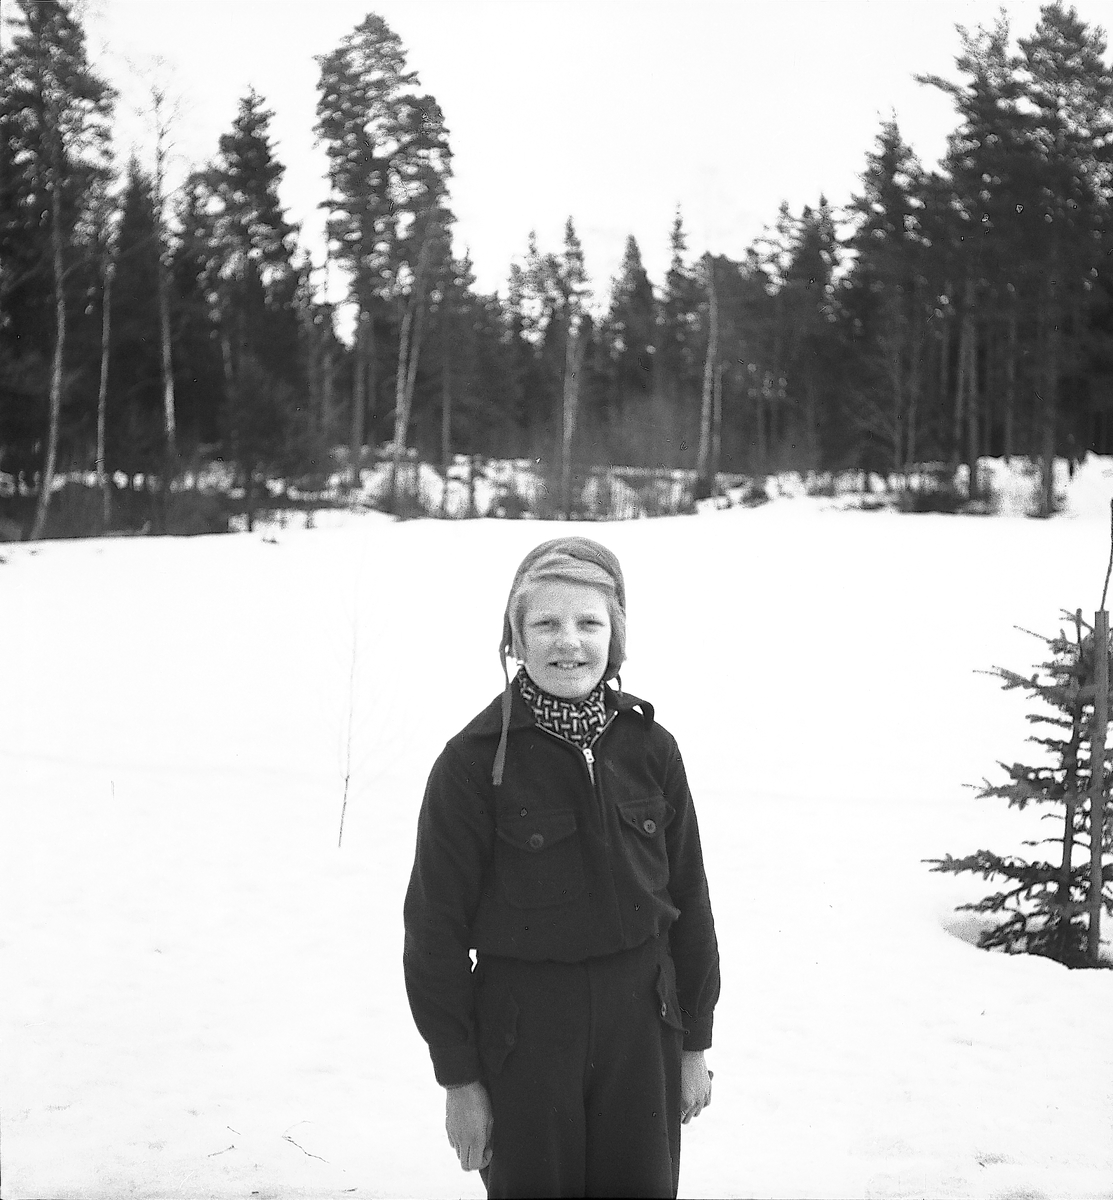 Februari 1938. Fettisdagstävling skidåkning.